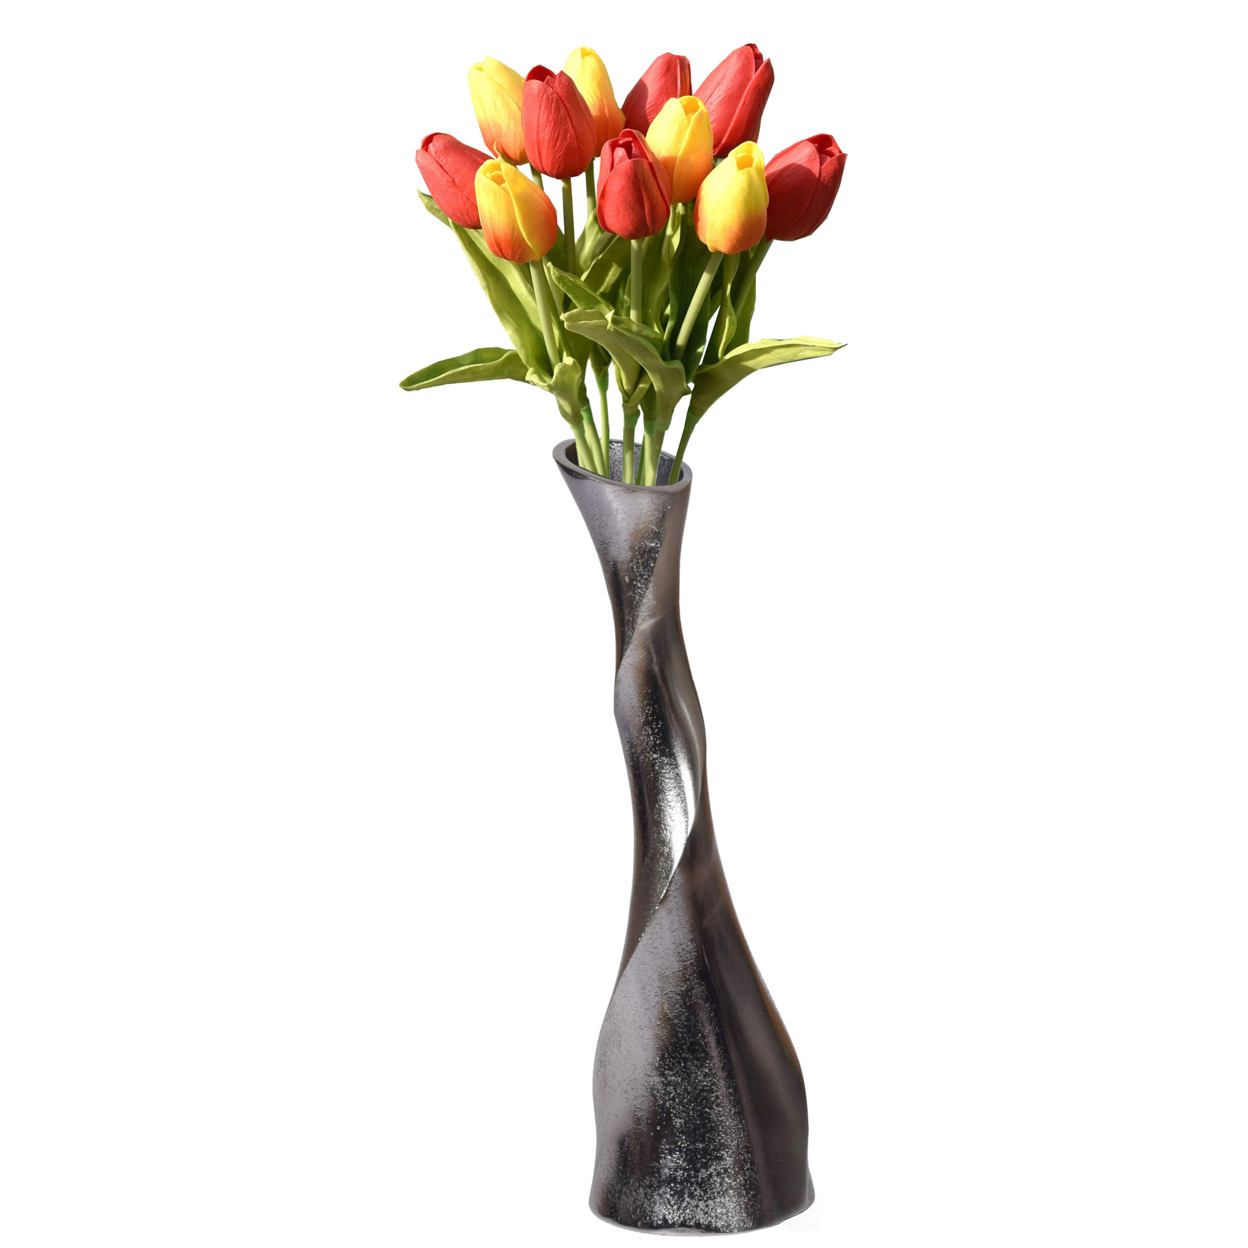 Aluminium-Casted Decorative Twisted Shape Flower Vase, Black Nickel 13.25 Inch